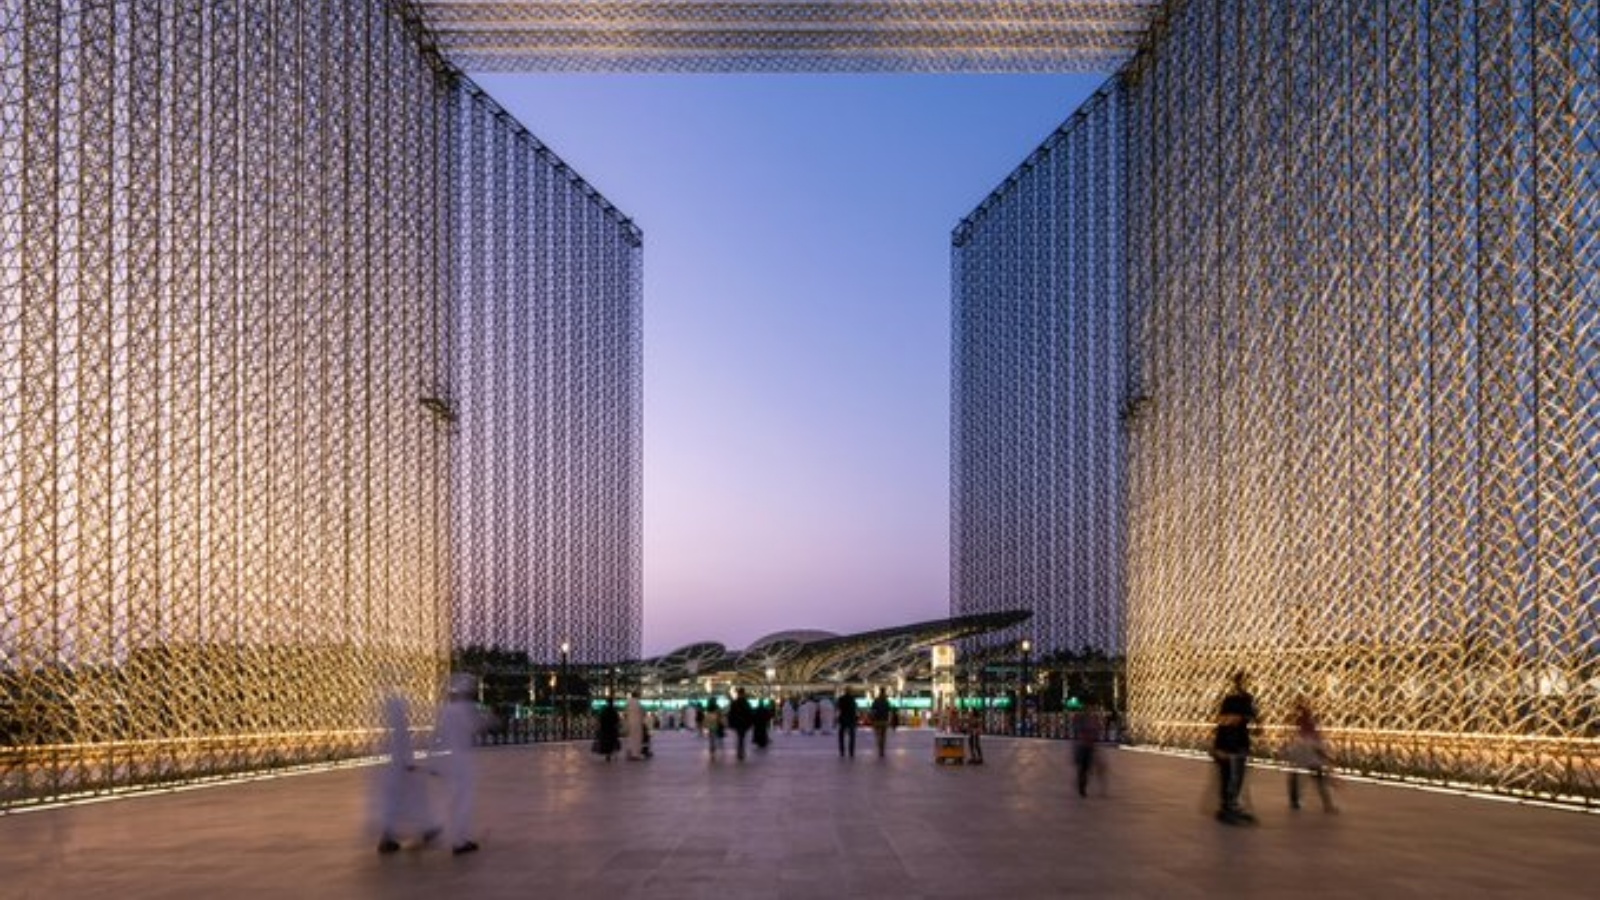 أشخاص في مدخل مدينة إكسبو التي تمتد على مساحة تبلغ ضعف مساحة إمارة موناكو. (من صفحة Expo 2020 Dubai في تويتر)